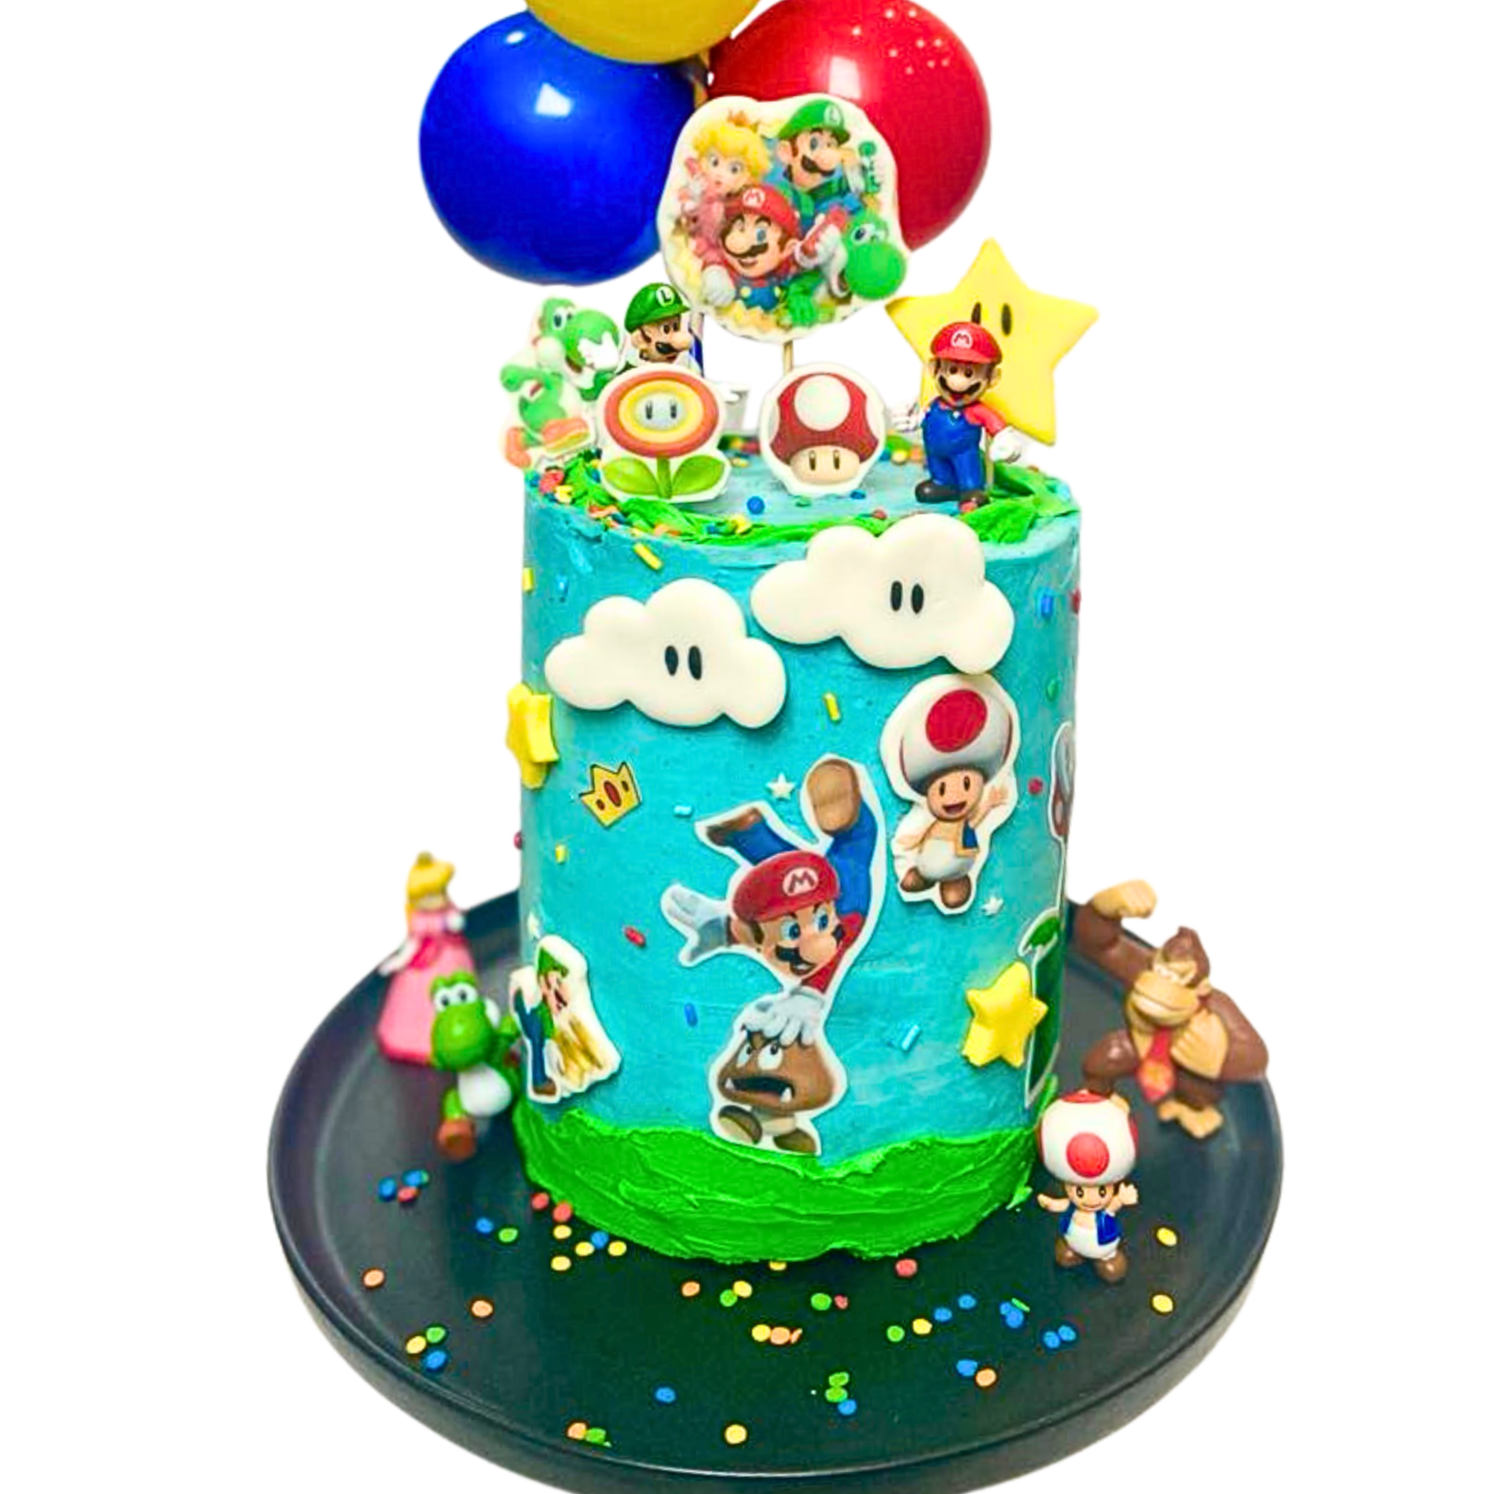 Décorations d'anniversaire Super Mario